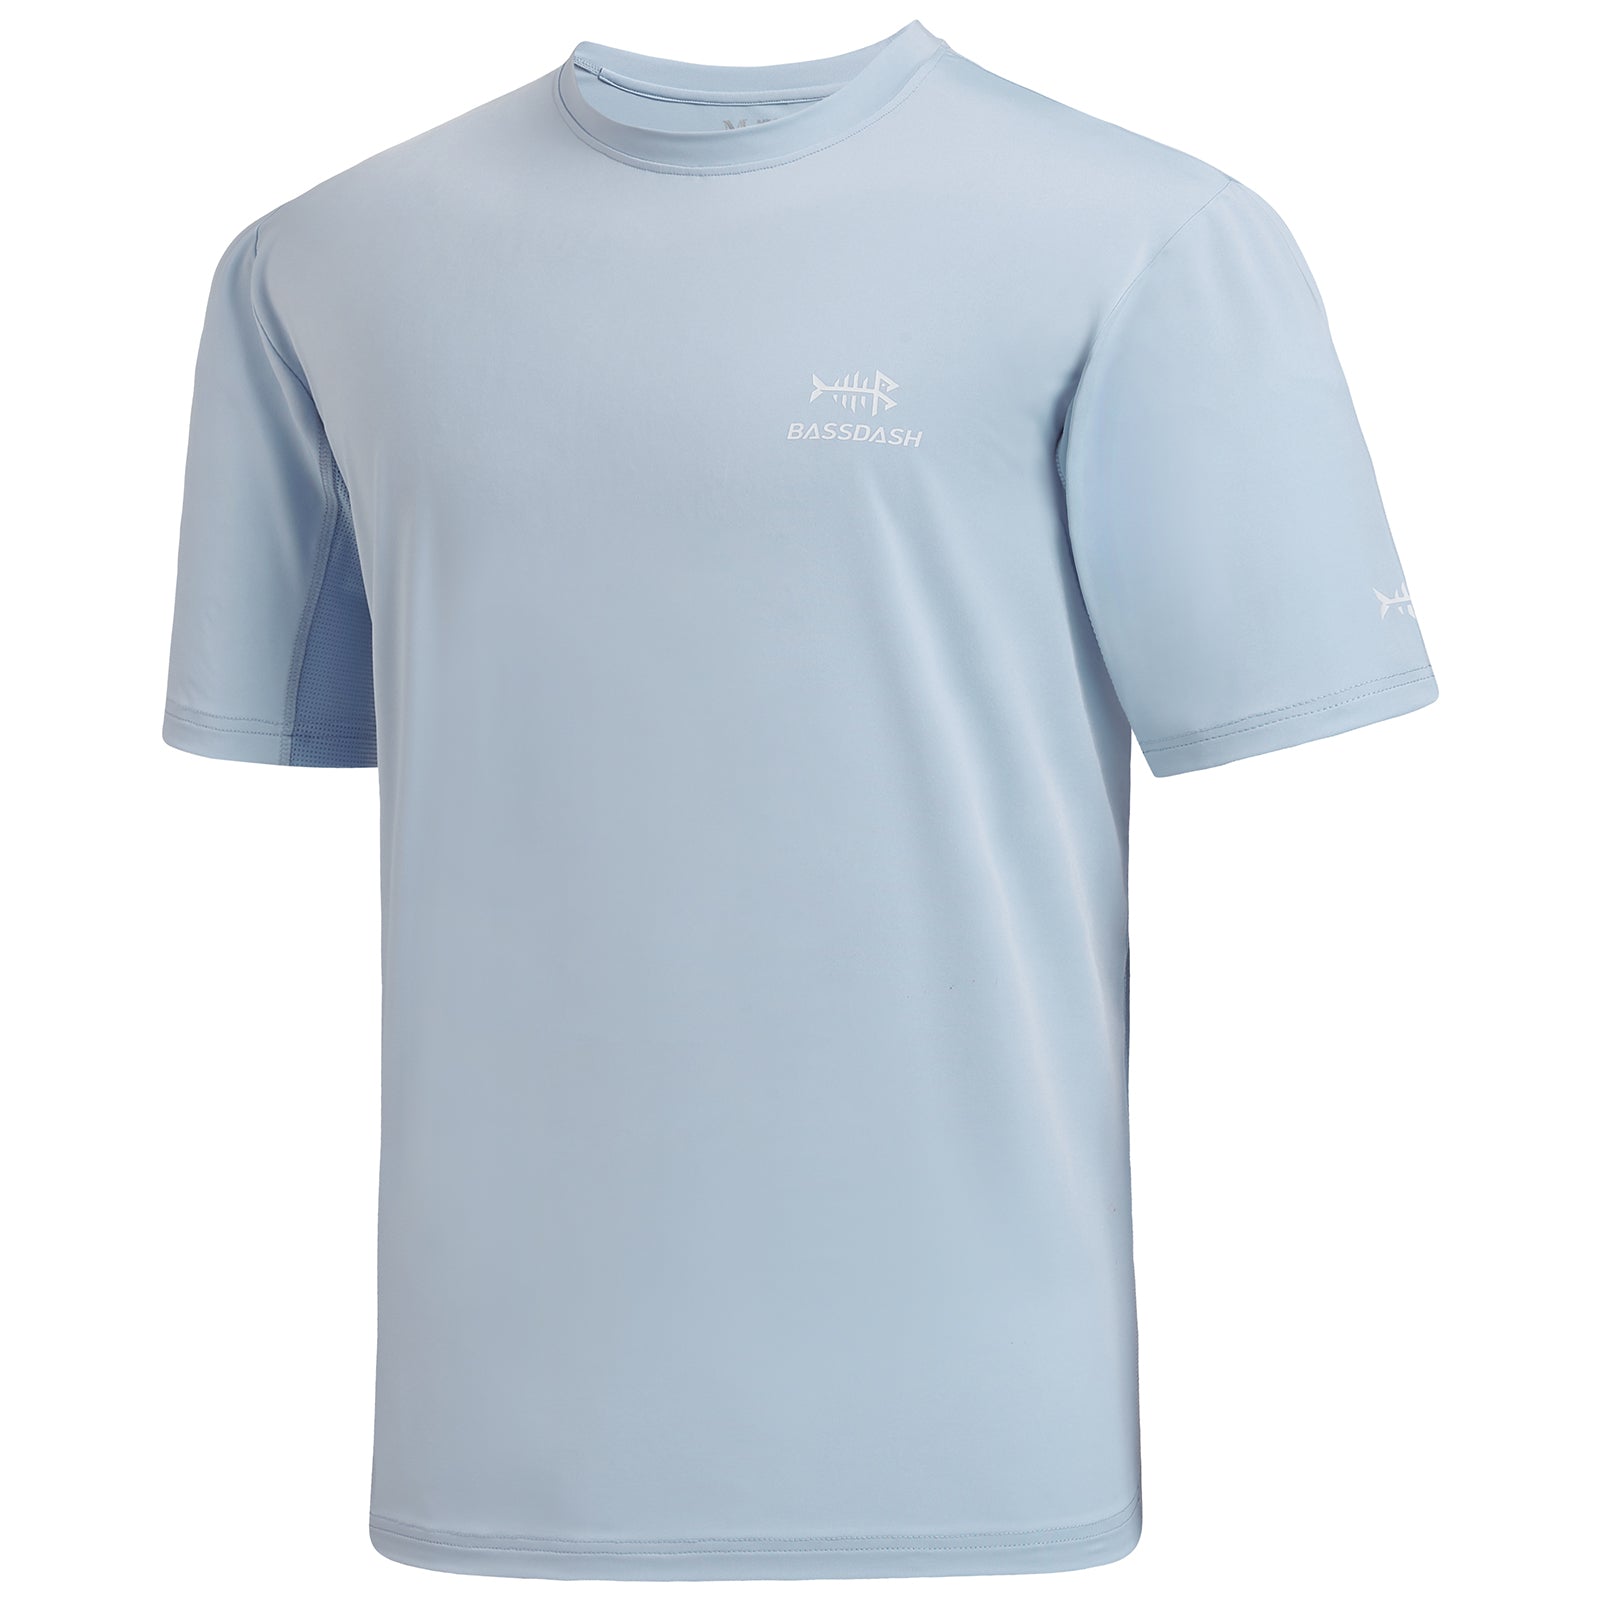 Bassdash Men's Upf 50+ Sun Protection Fishing Shirt Short Sleeve Uv T-shirt  - Fishing Jerseys - AliExpress